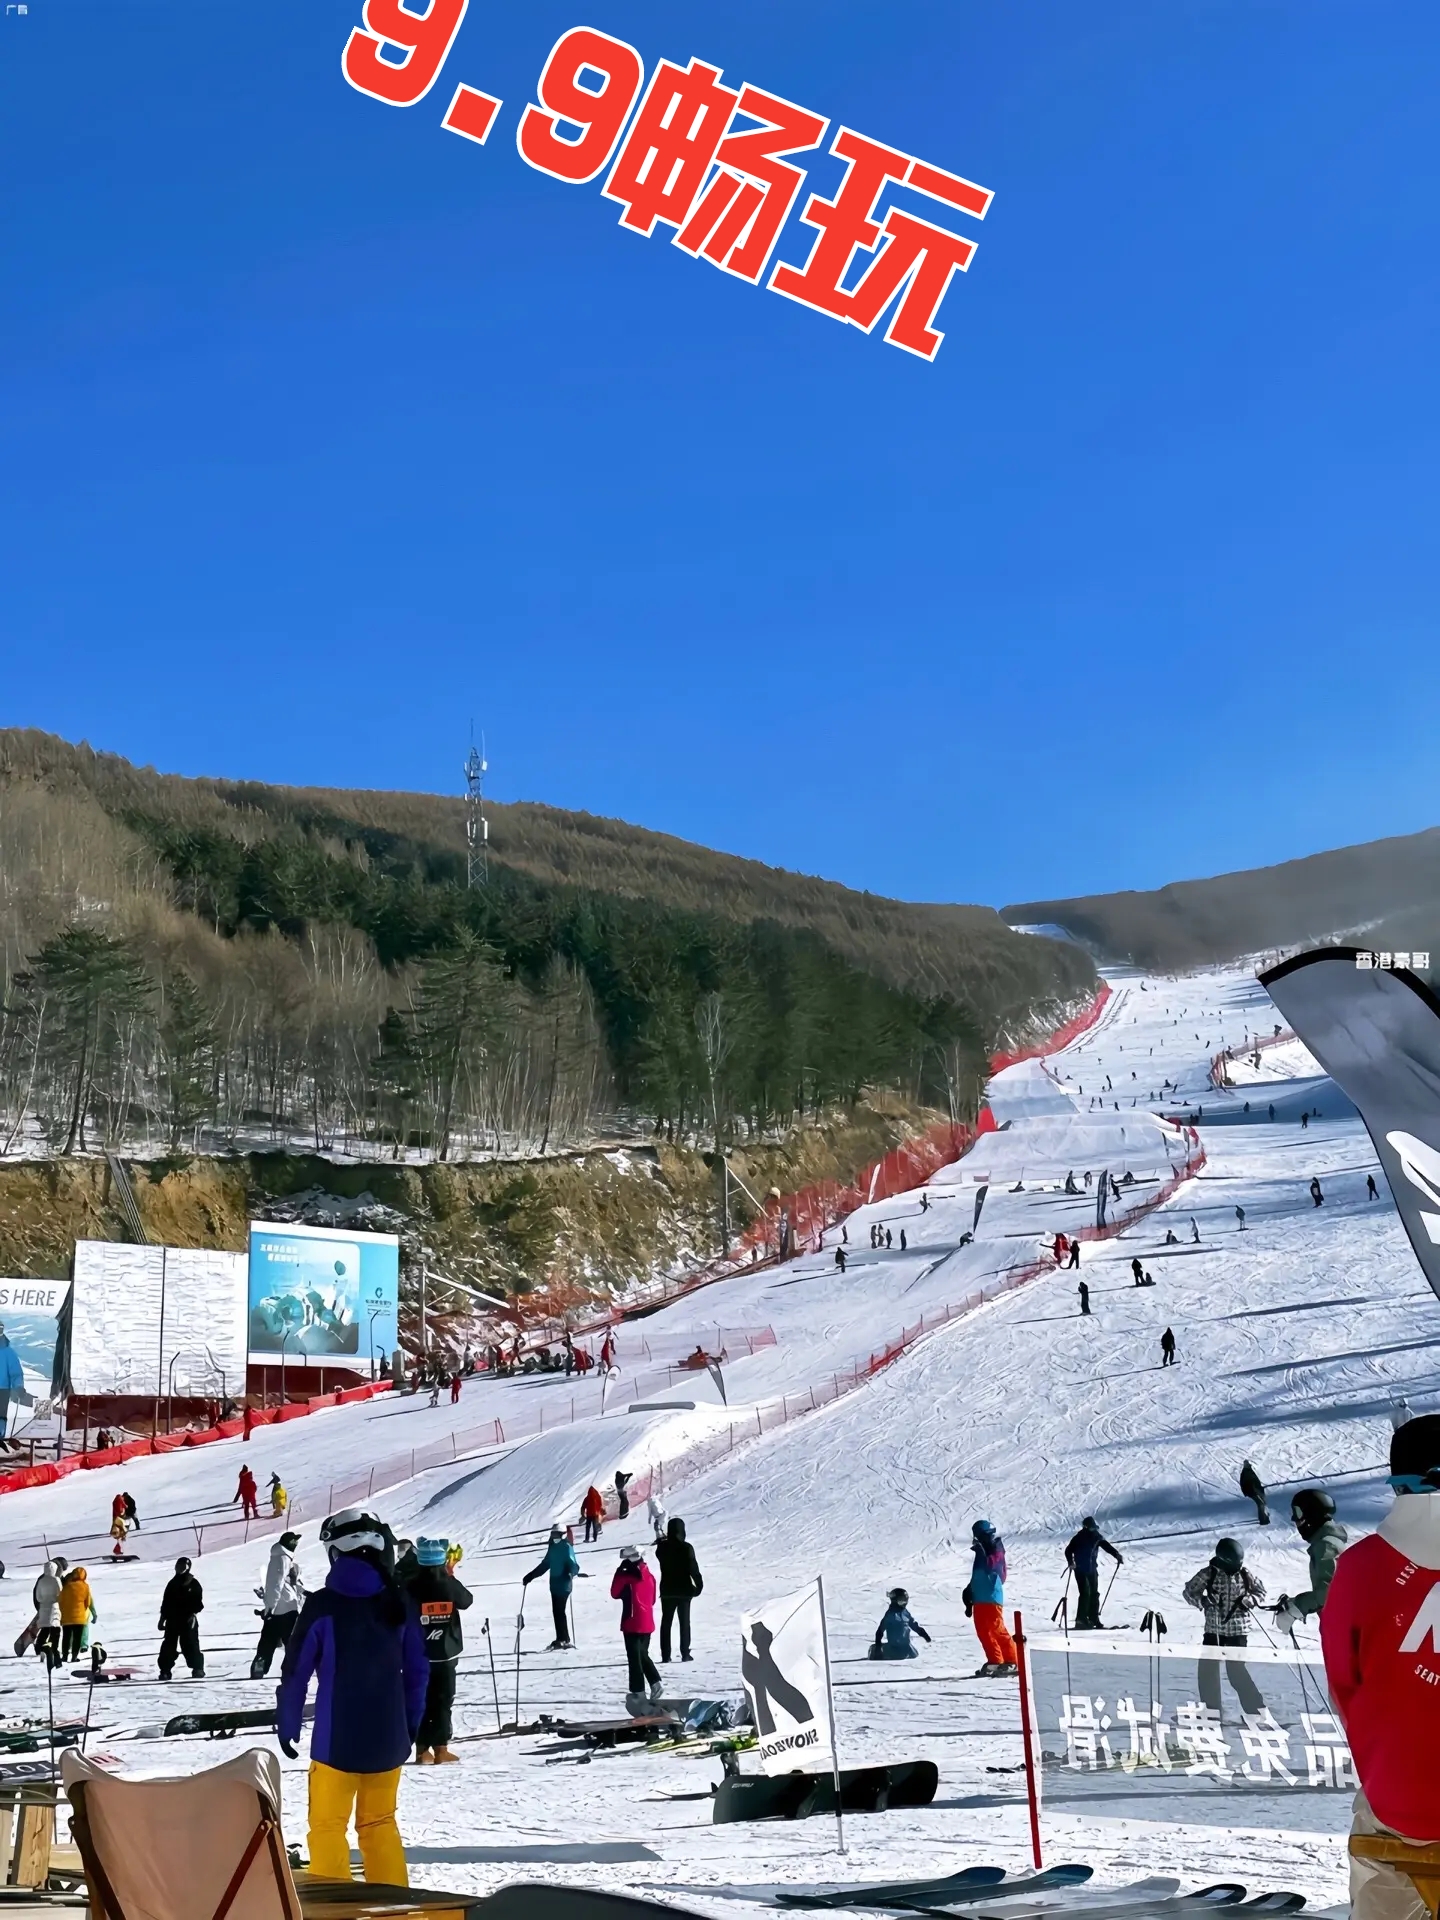 宁津蟋蟀谷滑雪场9.9畅玩一整天#滑雪🏂 #雪地里撒欢 #奔赴一场雪的快乐 #冬天该有的样子